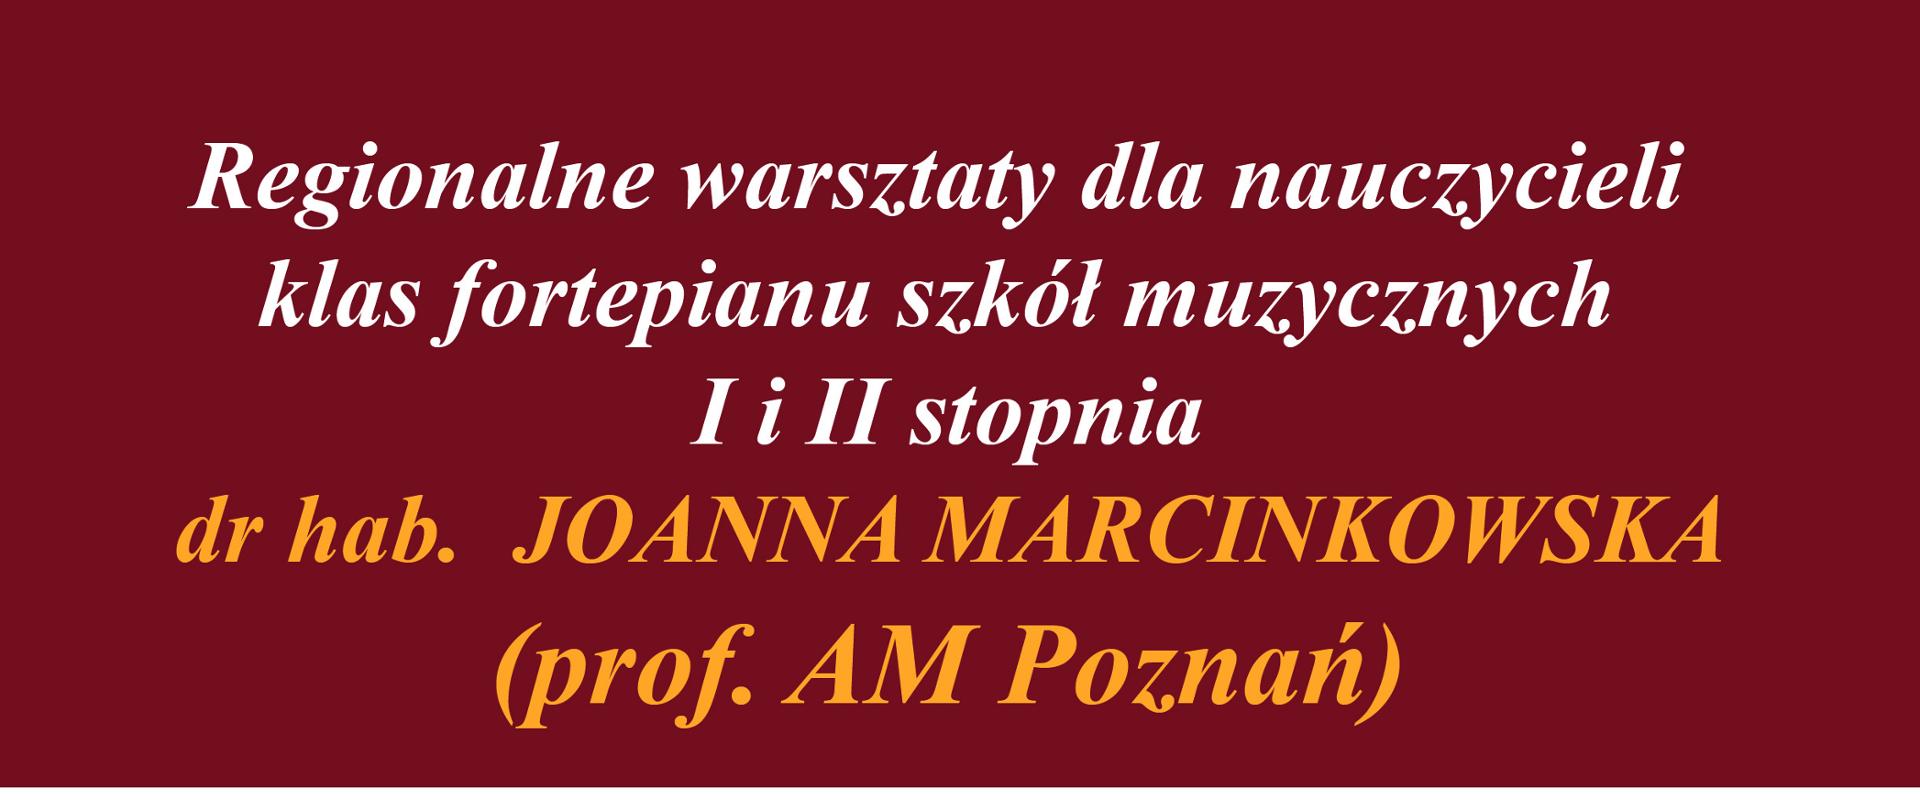 Plakat informujący o warsztatach z dr hab. Joanną Marcinkowską na białym tle kolorowe napisy, informujące o warsztatach